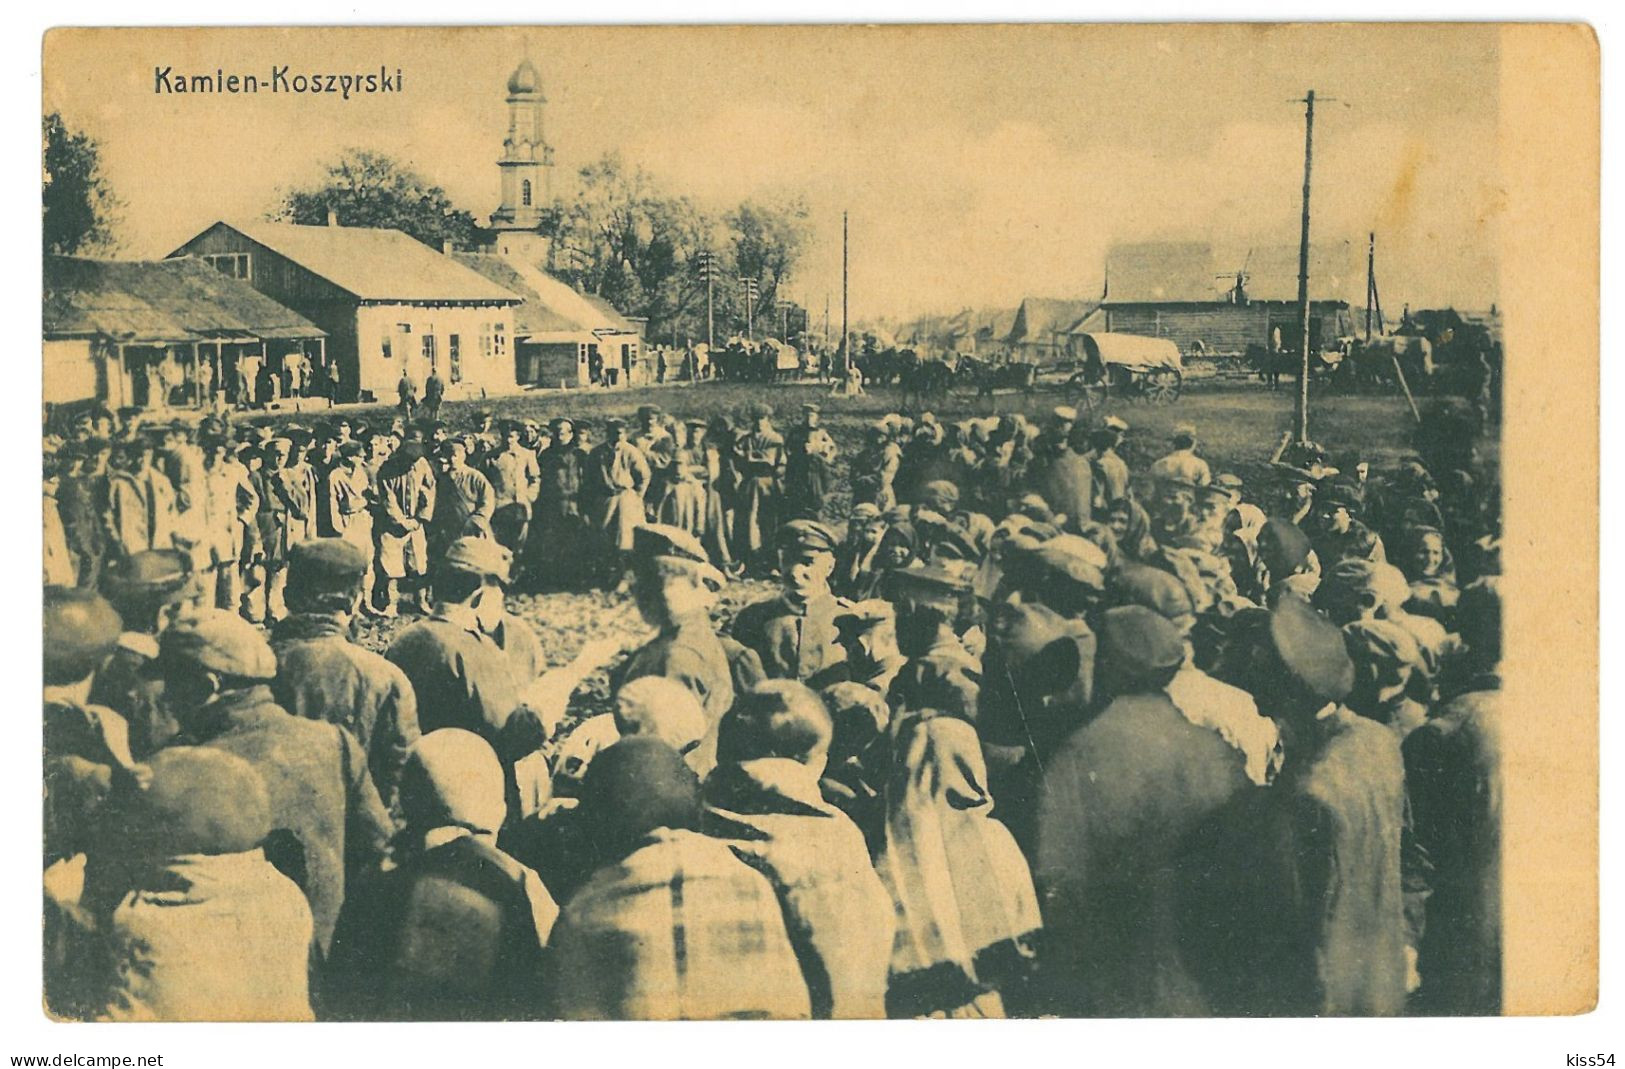 UK 70 - 23786 KAMIN-KASHYRSKYI, Market, Military, Ukraine - Old Postcard, CENSOR - Used - 1918 - Ukraine